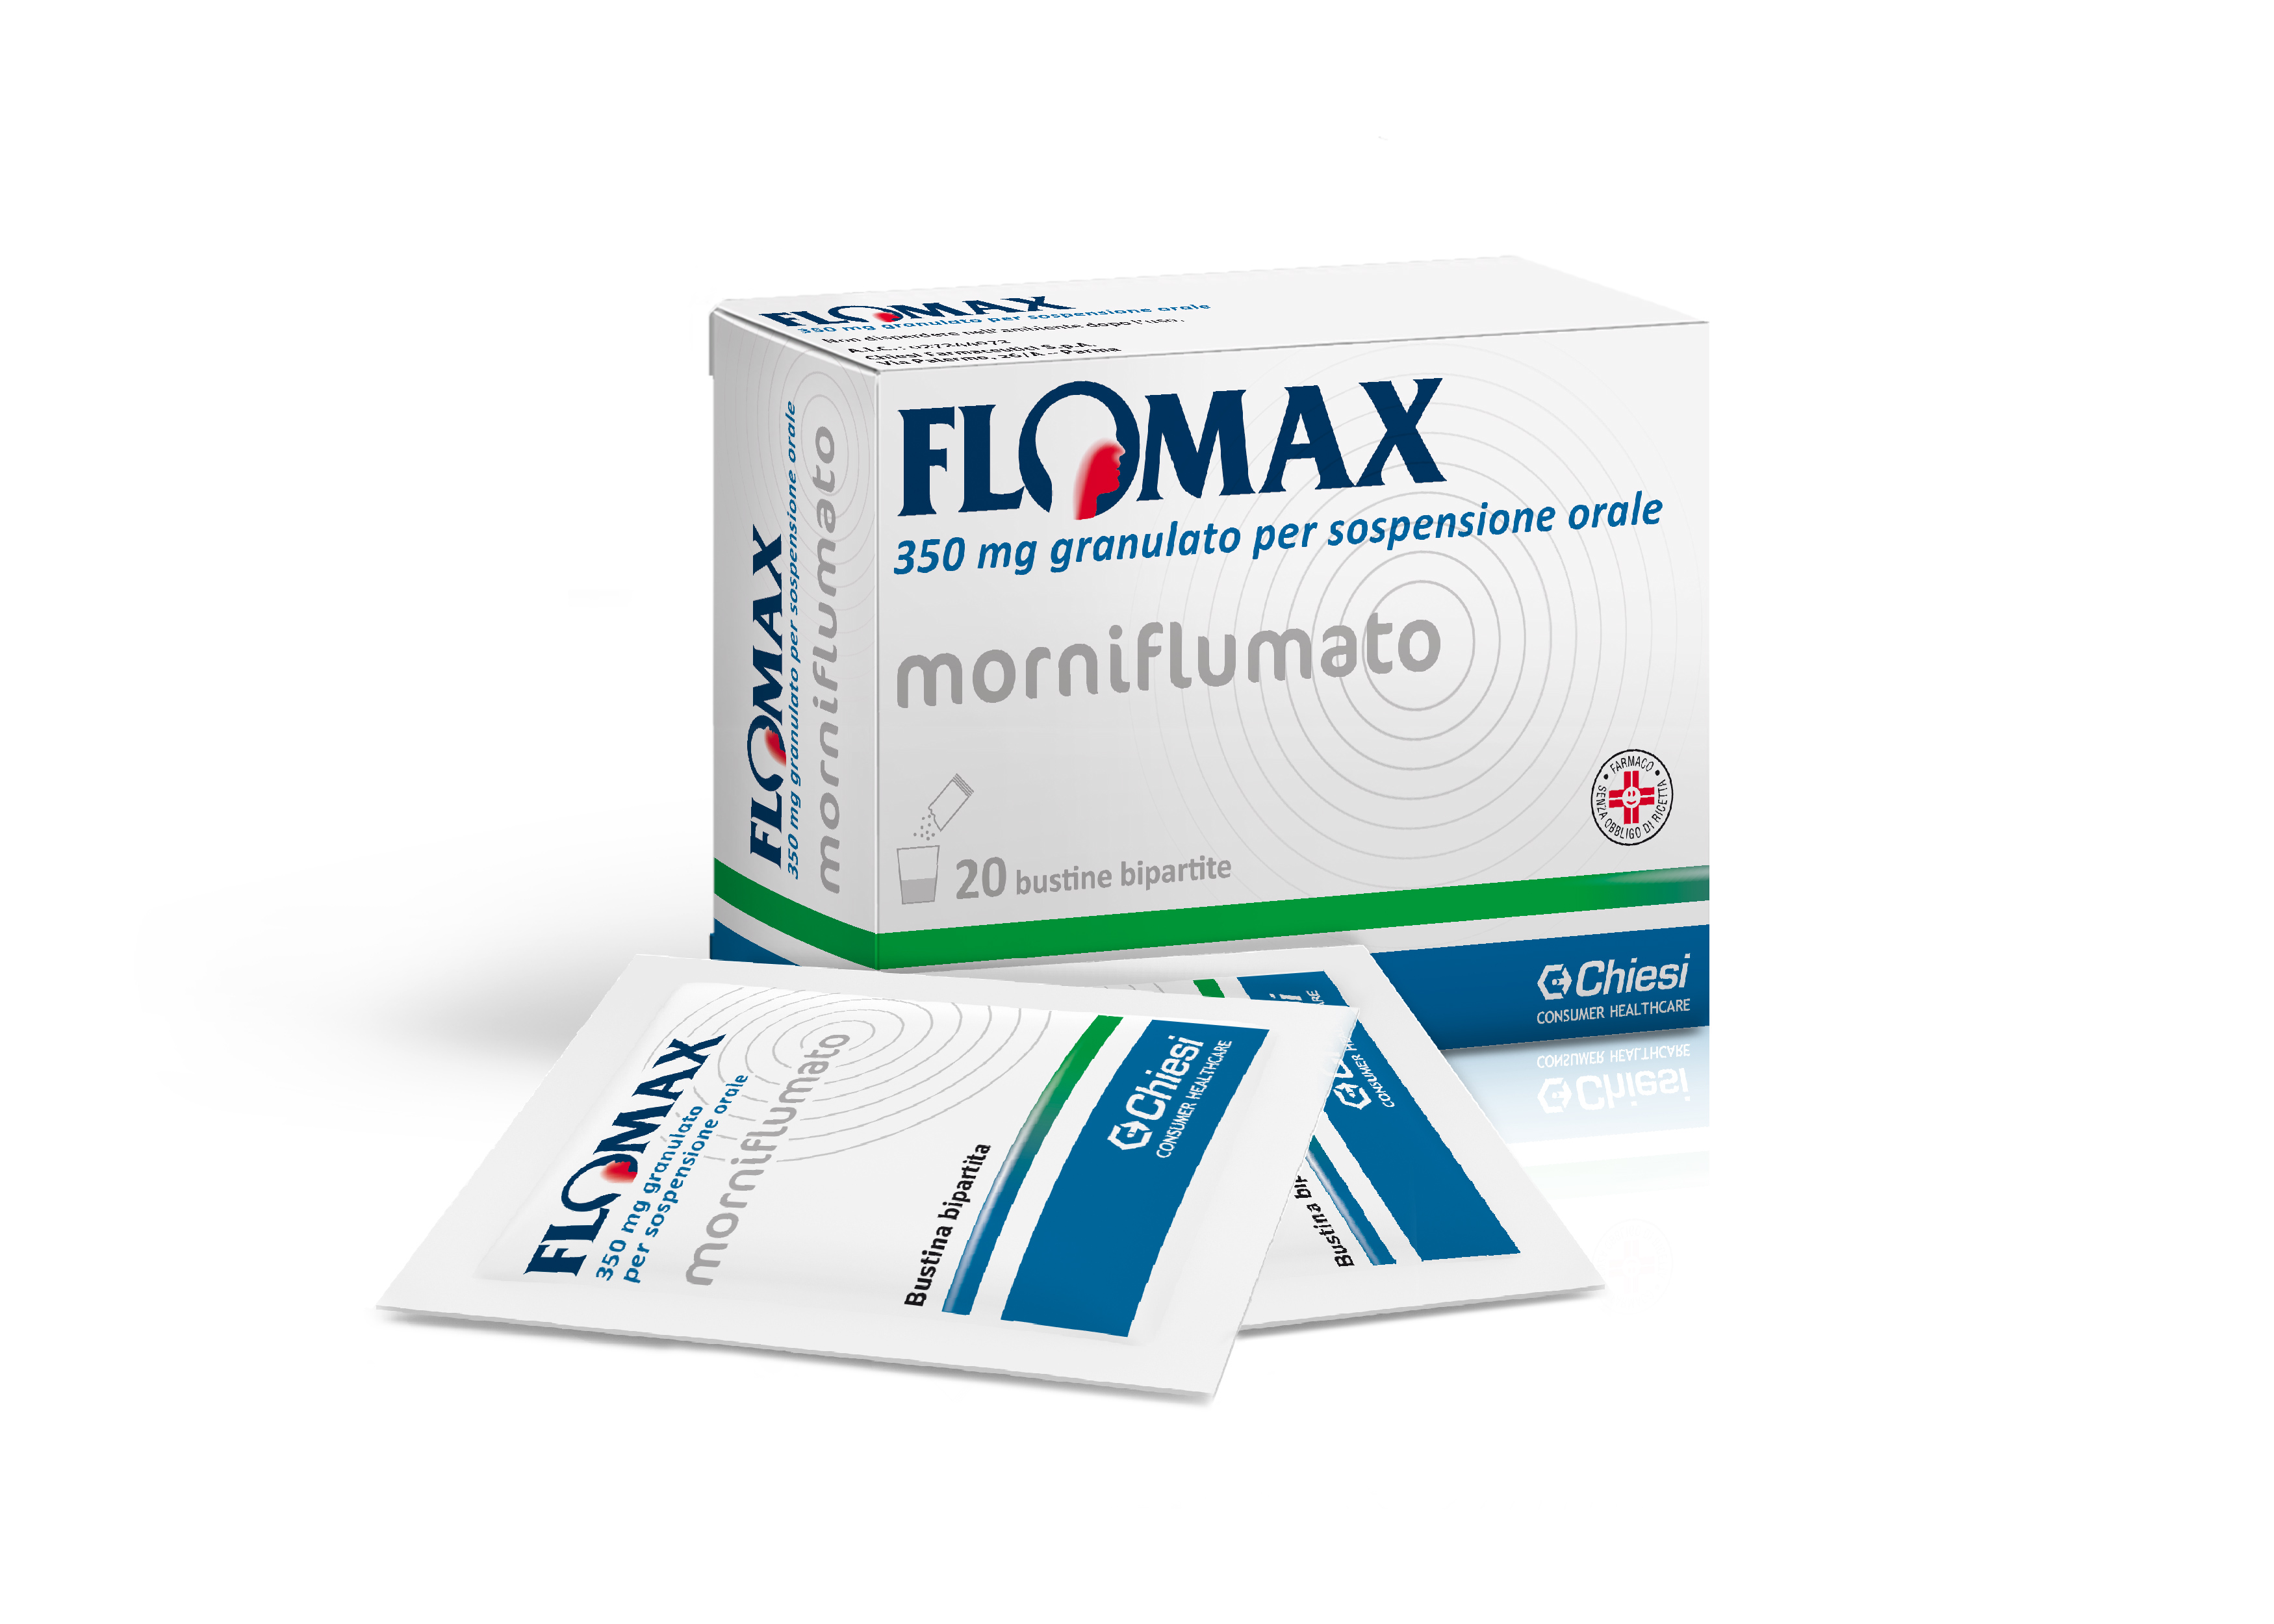 Immagine della confezione di Flomax, farmaco di Chiesi Farmaceutici S.p.A.